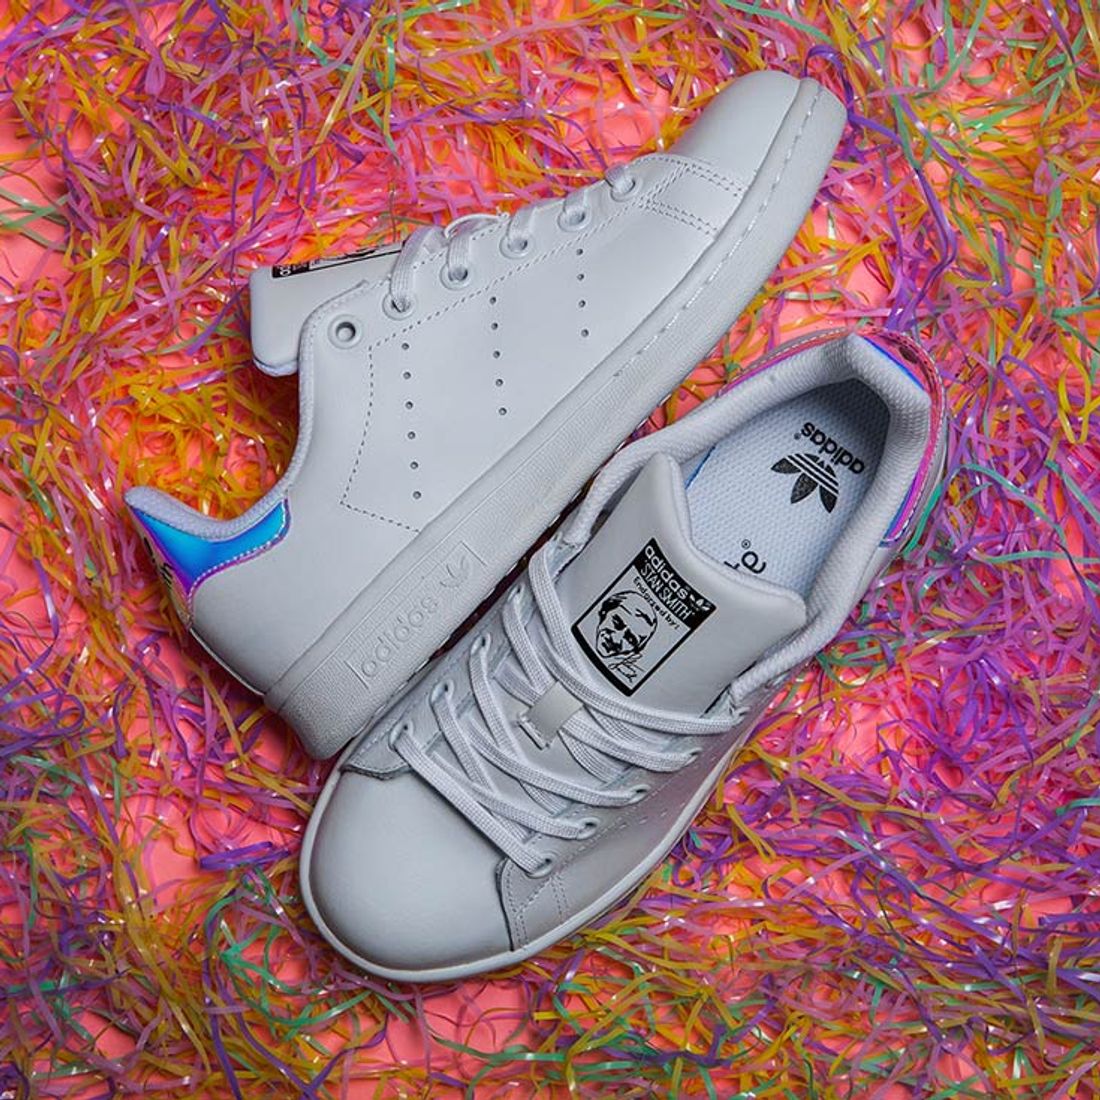 sensor rechazo vacío adidas Stan Smith Gs (Iridescent) - Sneaker Freaker